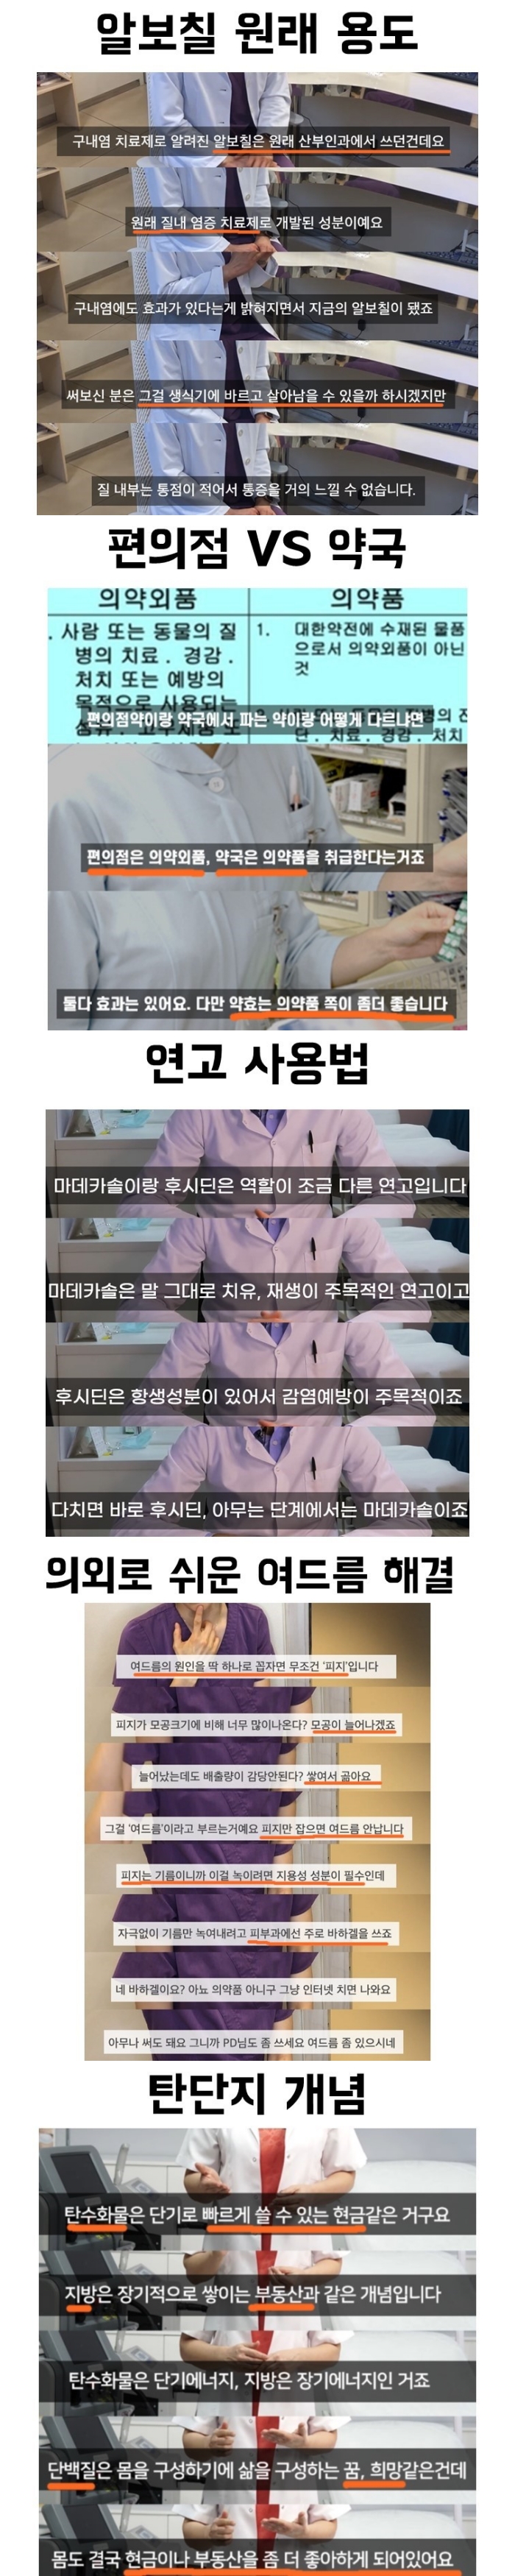 한국인이 잘 모르는 의학 상식